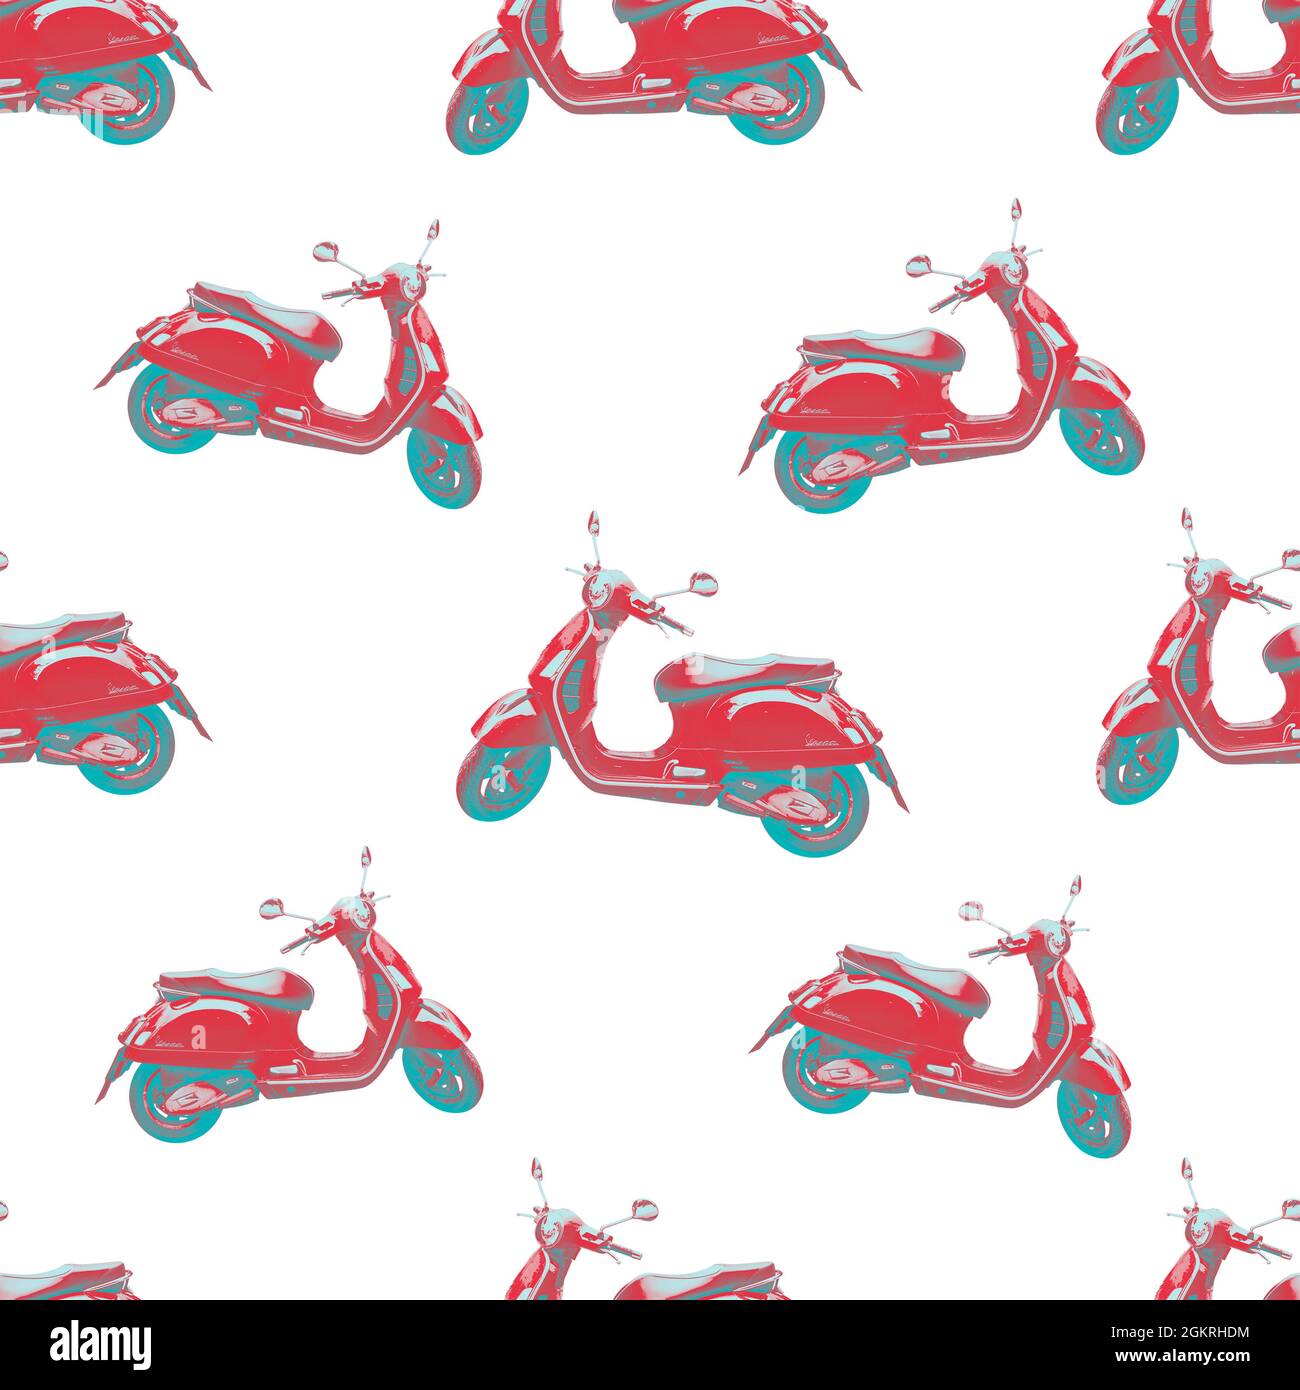 Nahtlos wiederholendes Design eines roten und zyanblauen Duotons einer Vespa Motorroller isoliert auf einem weißen Hintergrund, mit Clipping-Pfad Stockfoto